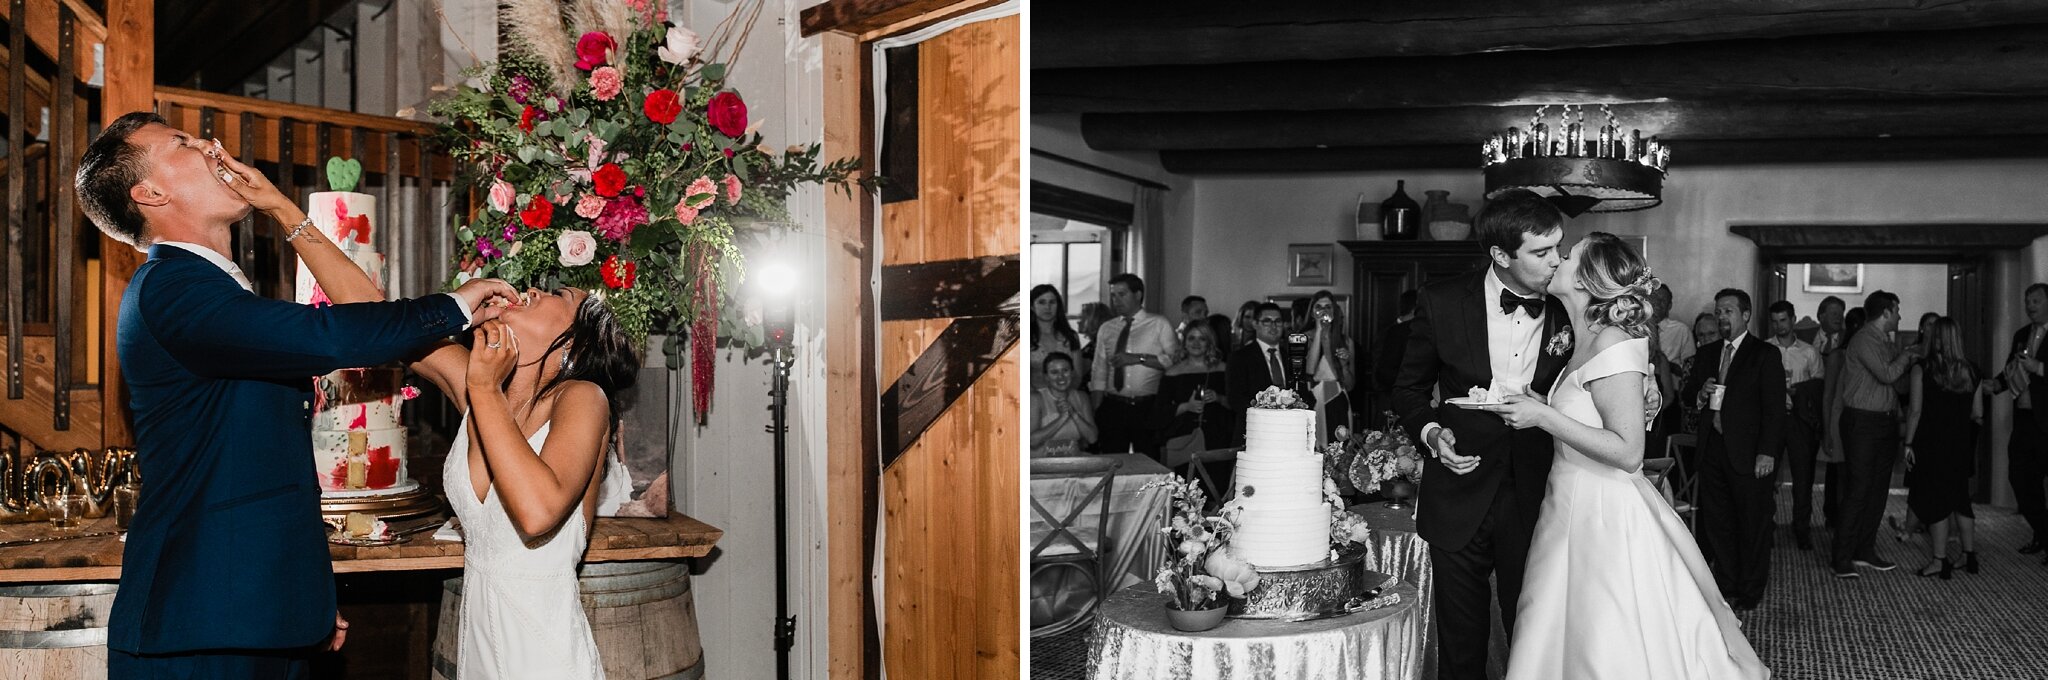 Alicia+lucia+photography+-+albuquerque+wedding+photographer+-+santa+fe+wedding+photography+-+new+mexico+wedding+photographer+-+new+mexico+wedding+-+san+patricio+wedding+-+ruidoso+wedding+-+santa+fe+wedding_0086.jpg